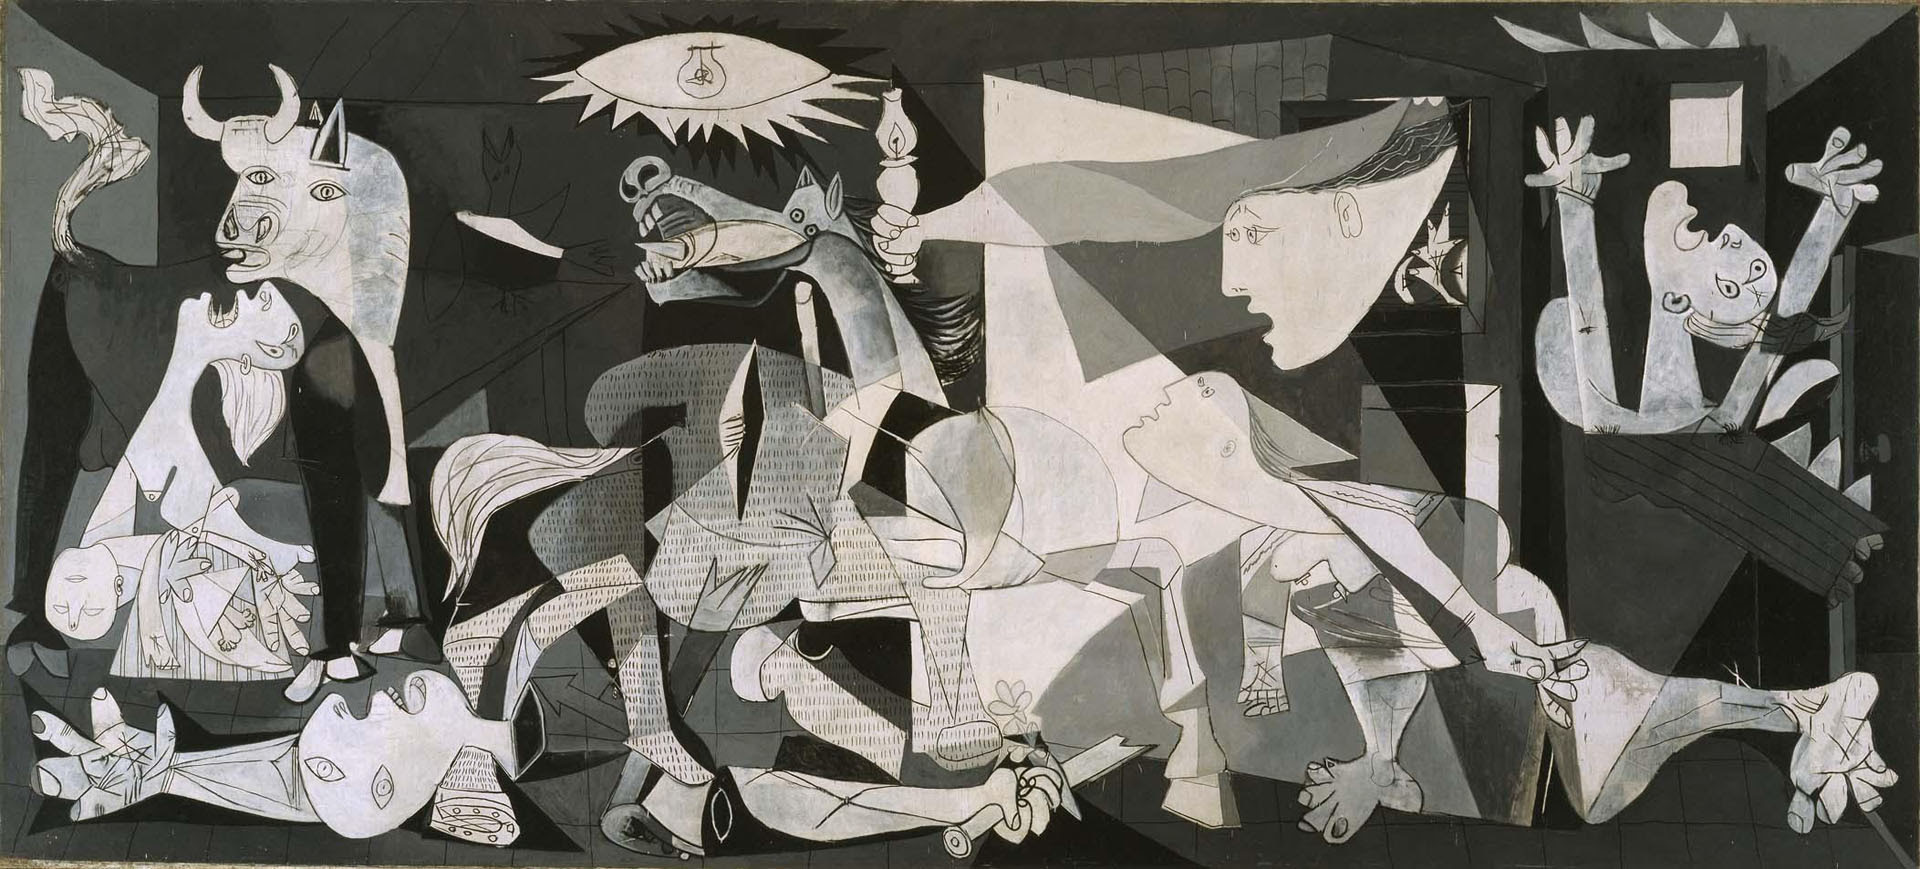 "Las mujeres detrás de Picasso", de Eugenia Tenembaum, ahonda en la violencia sufrida por varias de las mujeres del autor del "Guernica".